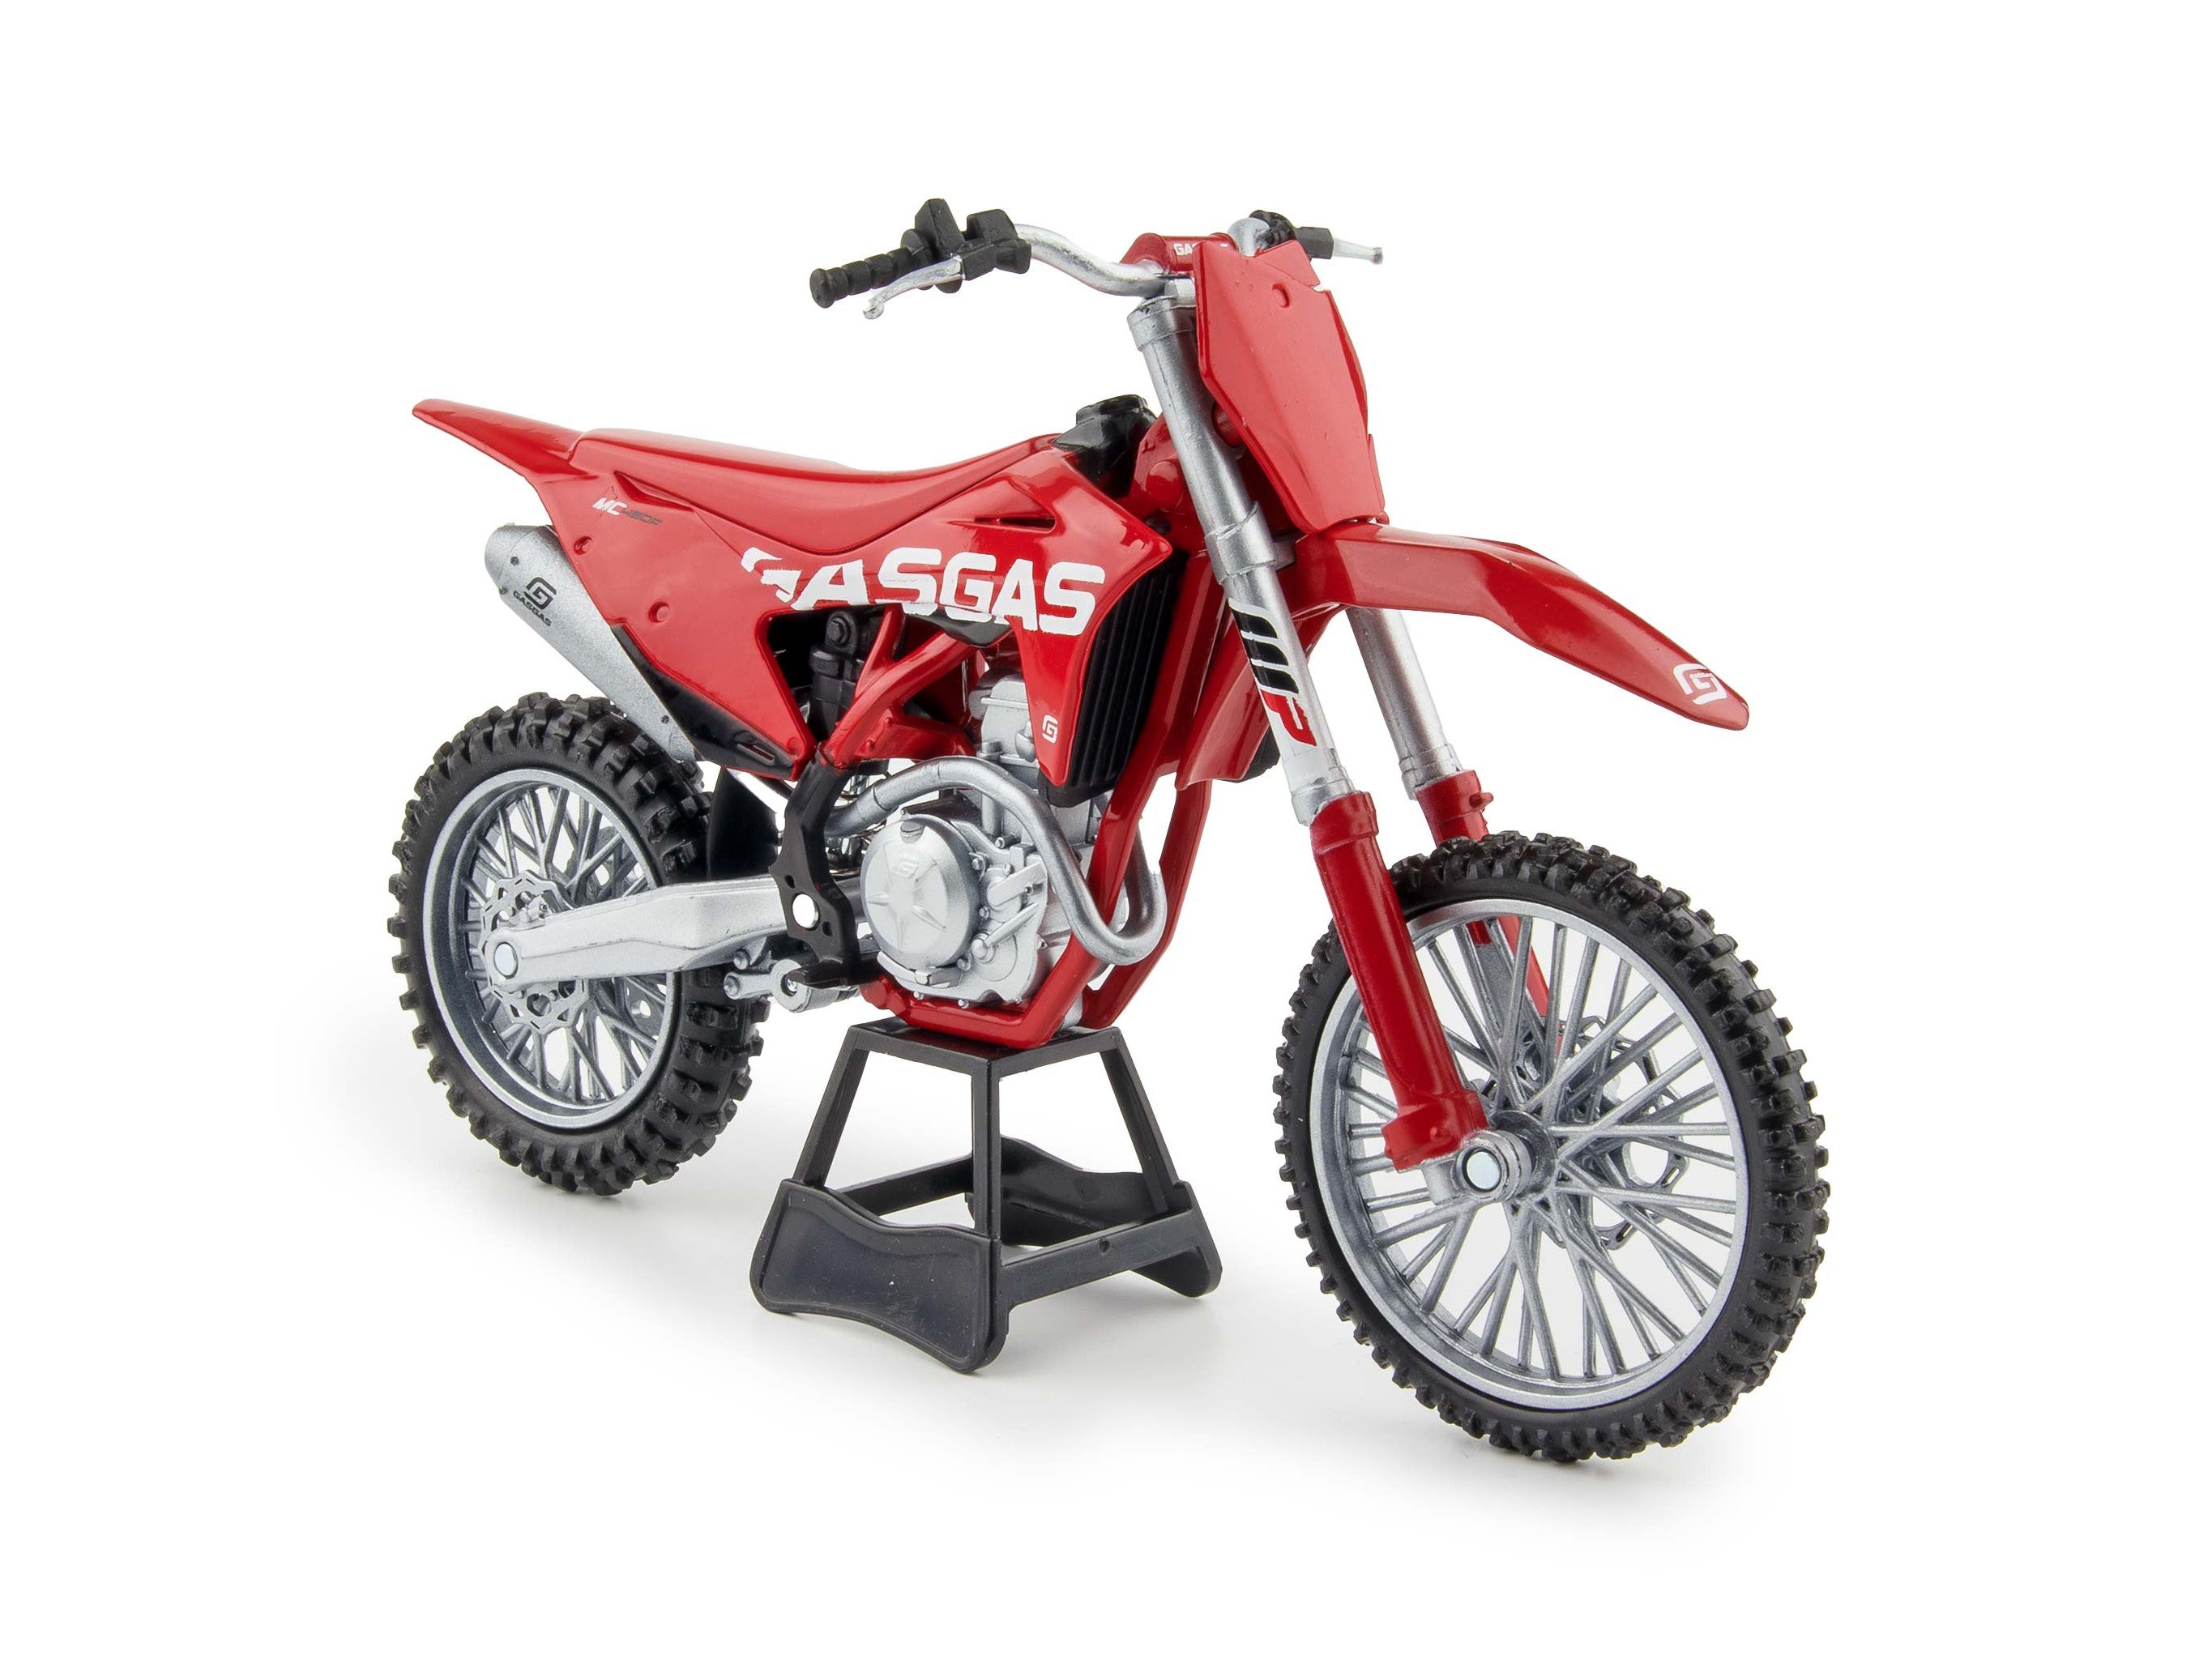 GASGAS MC 450F 2020 red - 1:12 Scale